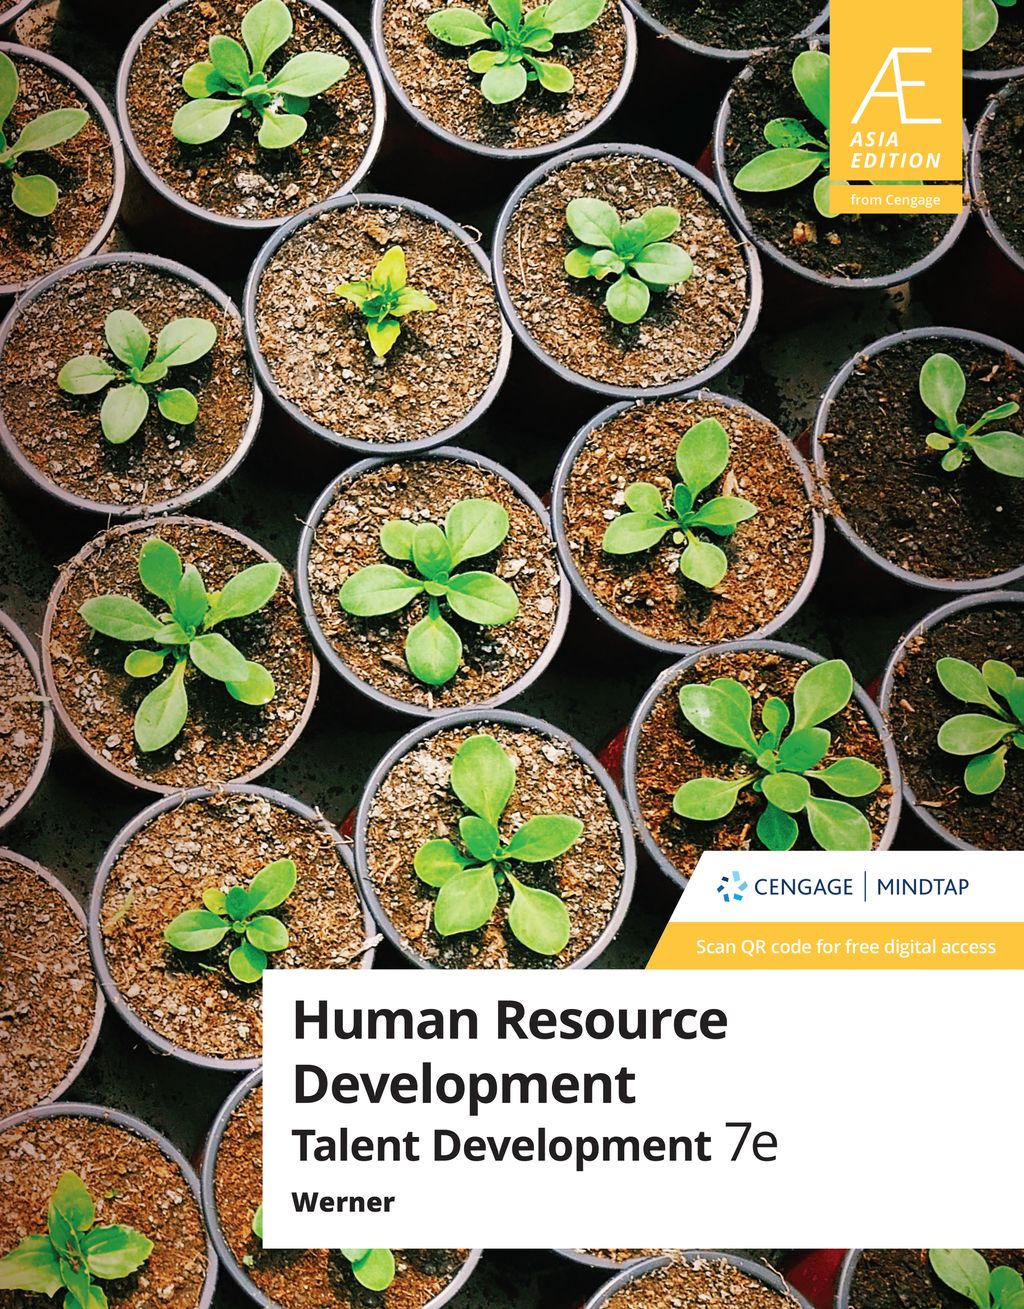 Human Resources Development Werner 7E.jpg